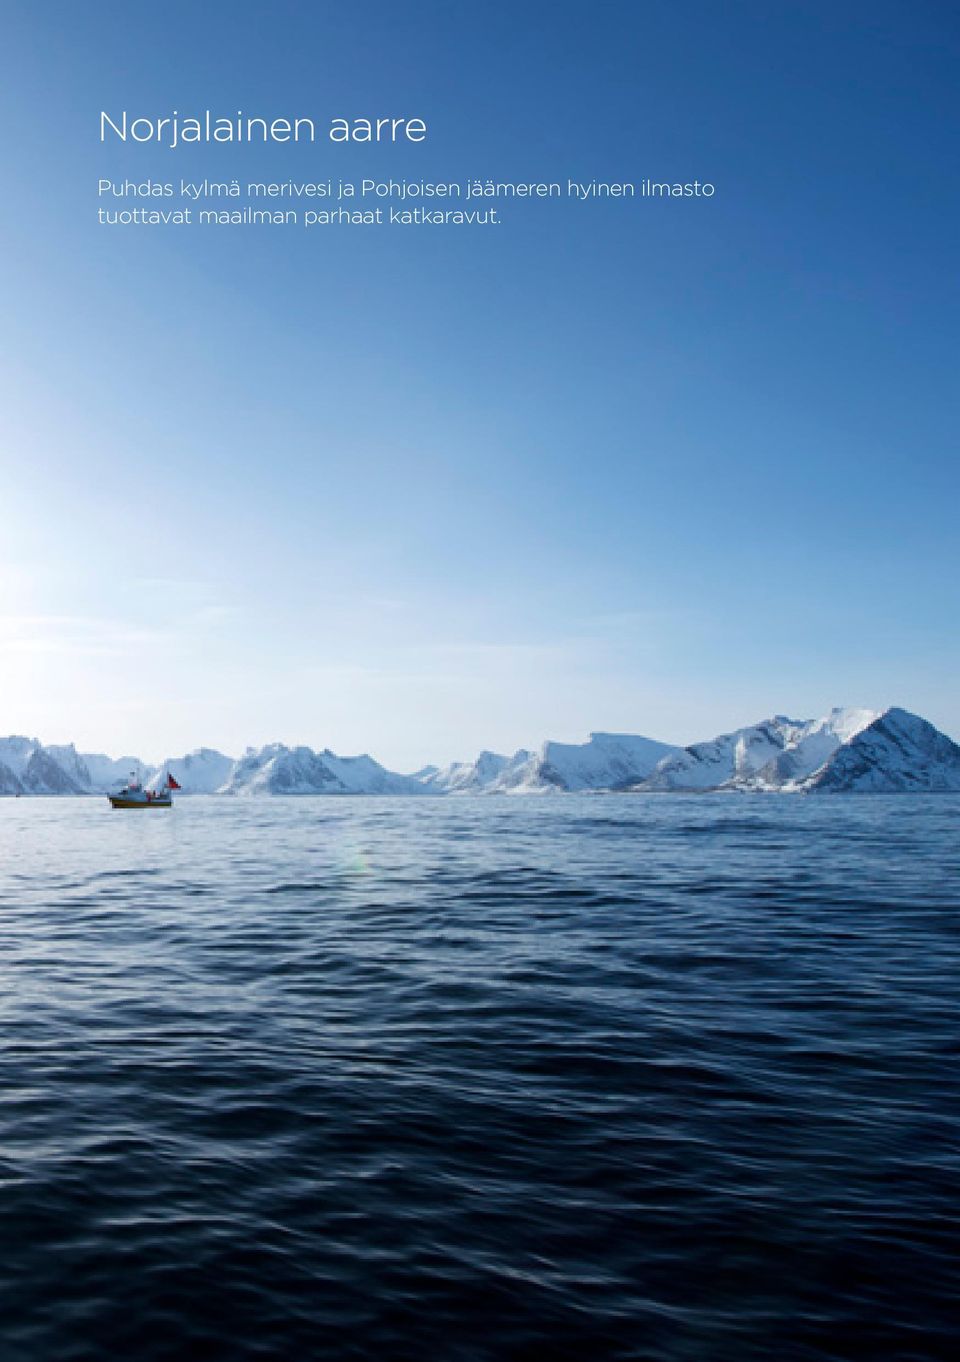 jäämeren hyinen ilmasto